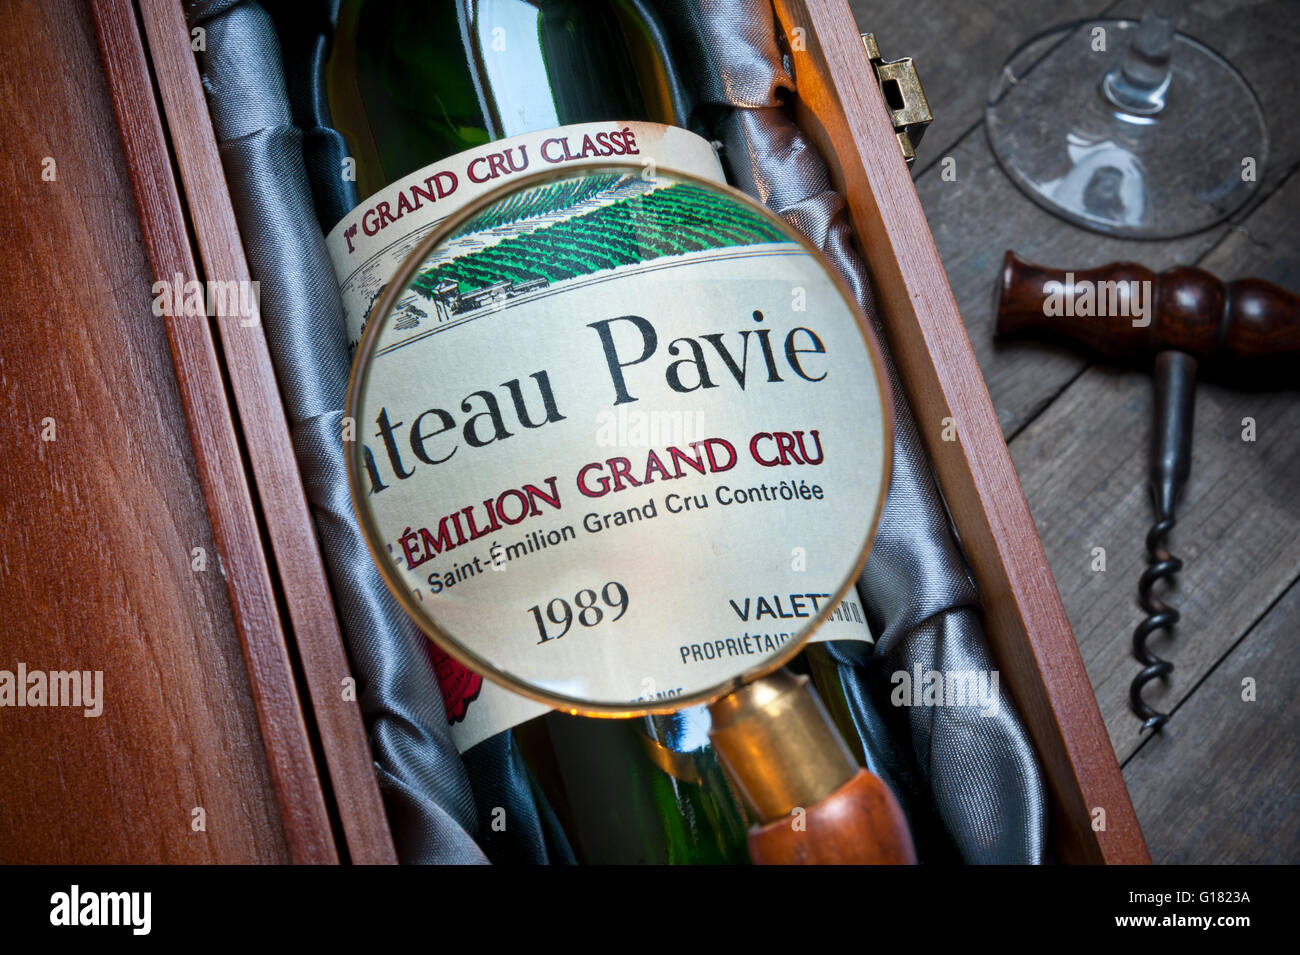 1989 Château Pavie St-Emilion Grande cru bouteille de vin et étiquette avec loupe dans boîte de présentation Bordeaux France Banque D'Images